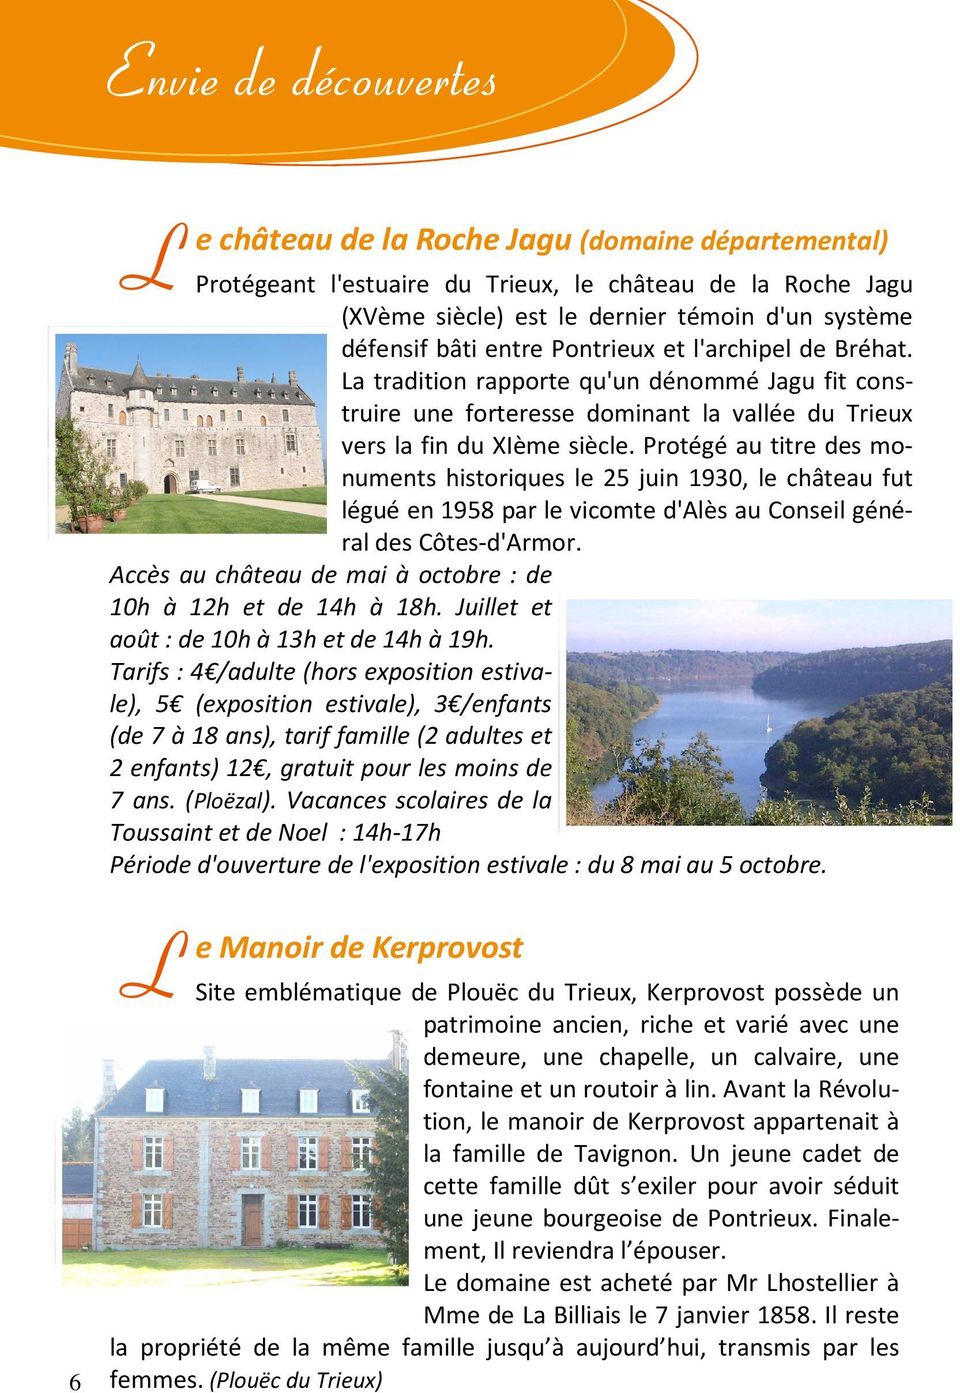 Protégé au titre des monuments historiques le 25 juin 1930, le château fut légué en 1958 par le vicomte d'alès au Conseil général des Côtes-d'Armor.